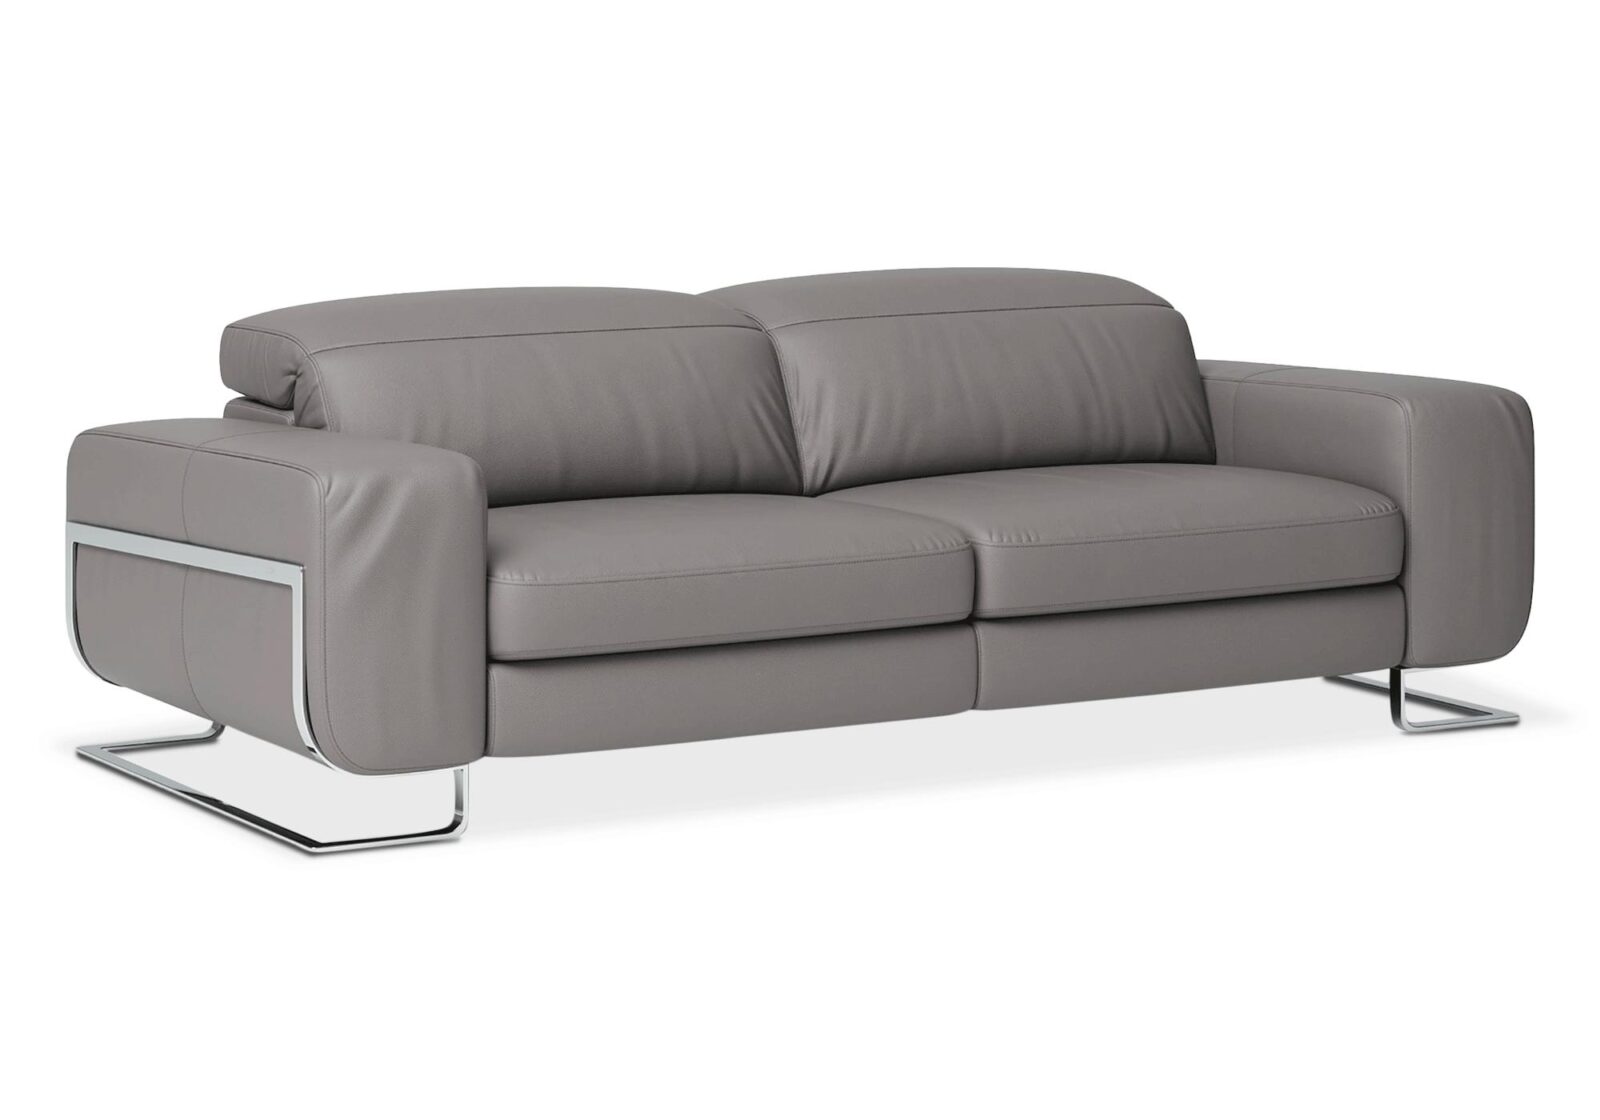 3er Sofa 8151 Joop mit Kopfstützen. Bezug: Leder. Farbe: Grau. Erhältlich bei Möbel Gallati.